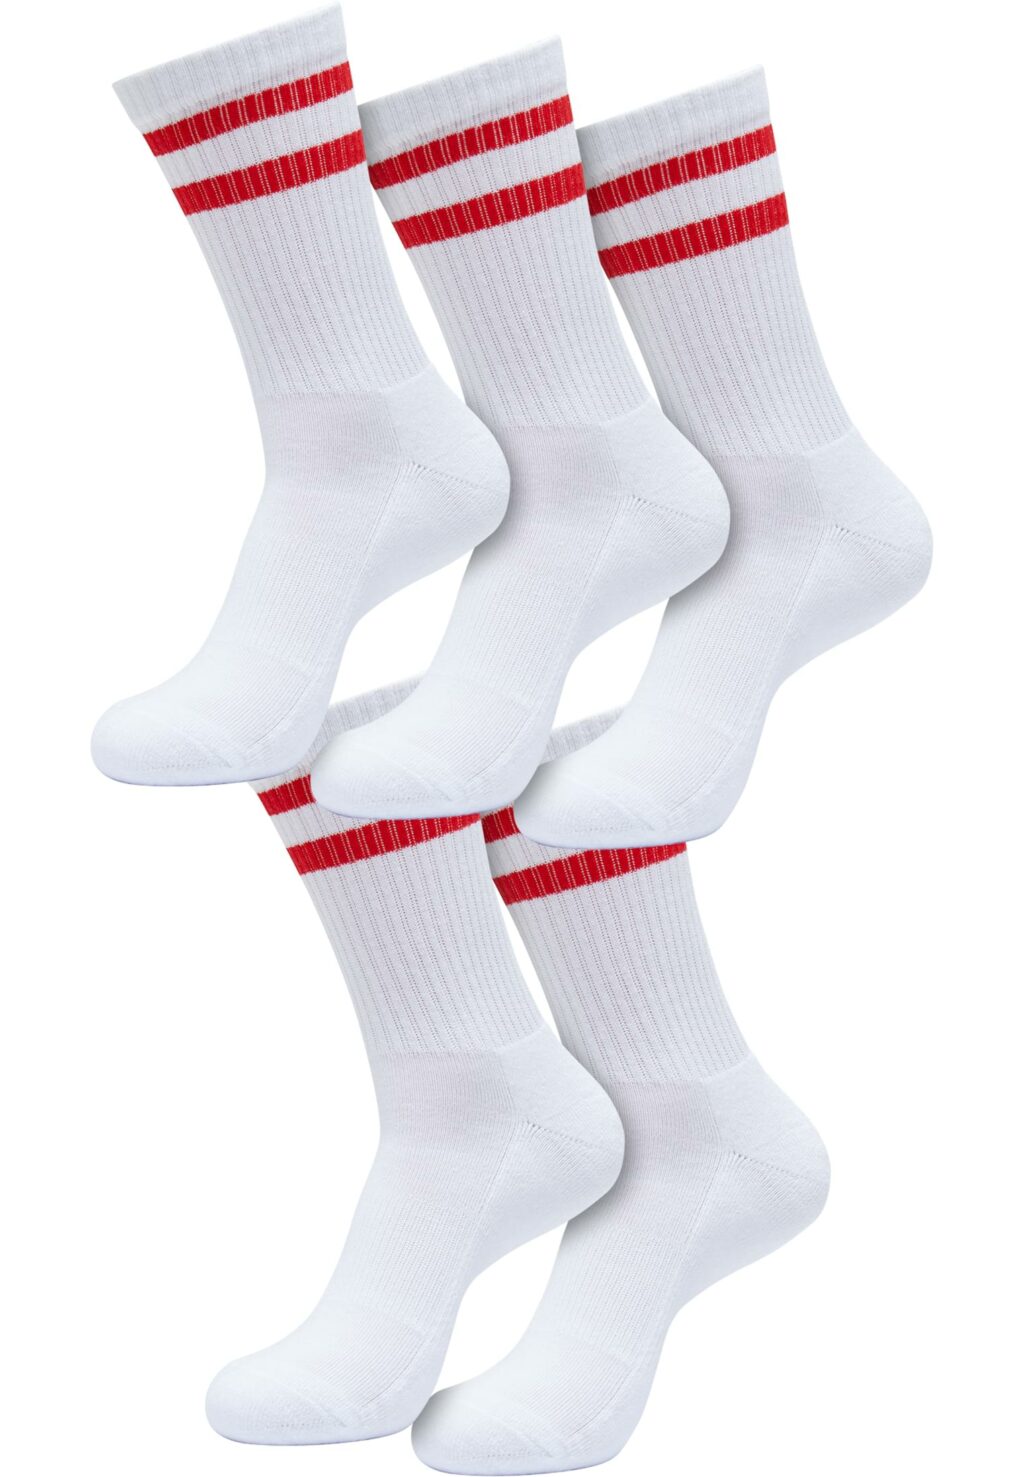 Double Stripe Socks 5-Pack white/cityred TB6801